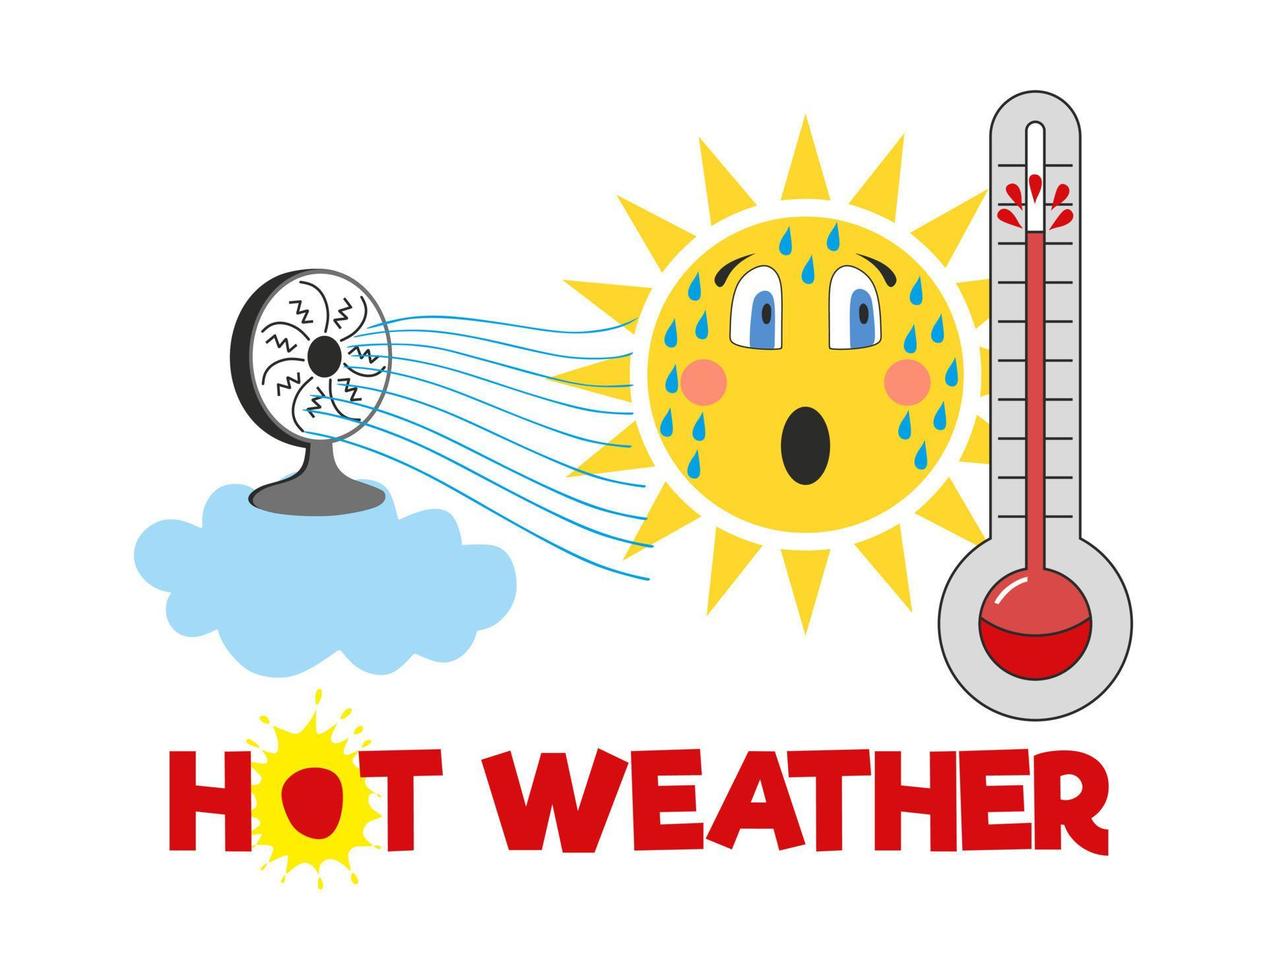 calor extremo sol carácter icono vector dibujado a mano ilustración. nube, abanico, viento, termómetro. clima caliente. colores amarillo, azul, naranja, rojo, blanco.